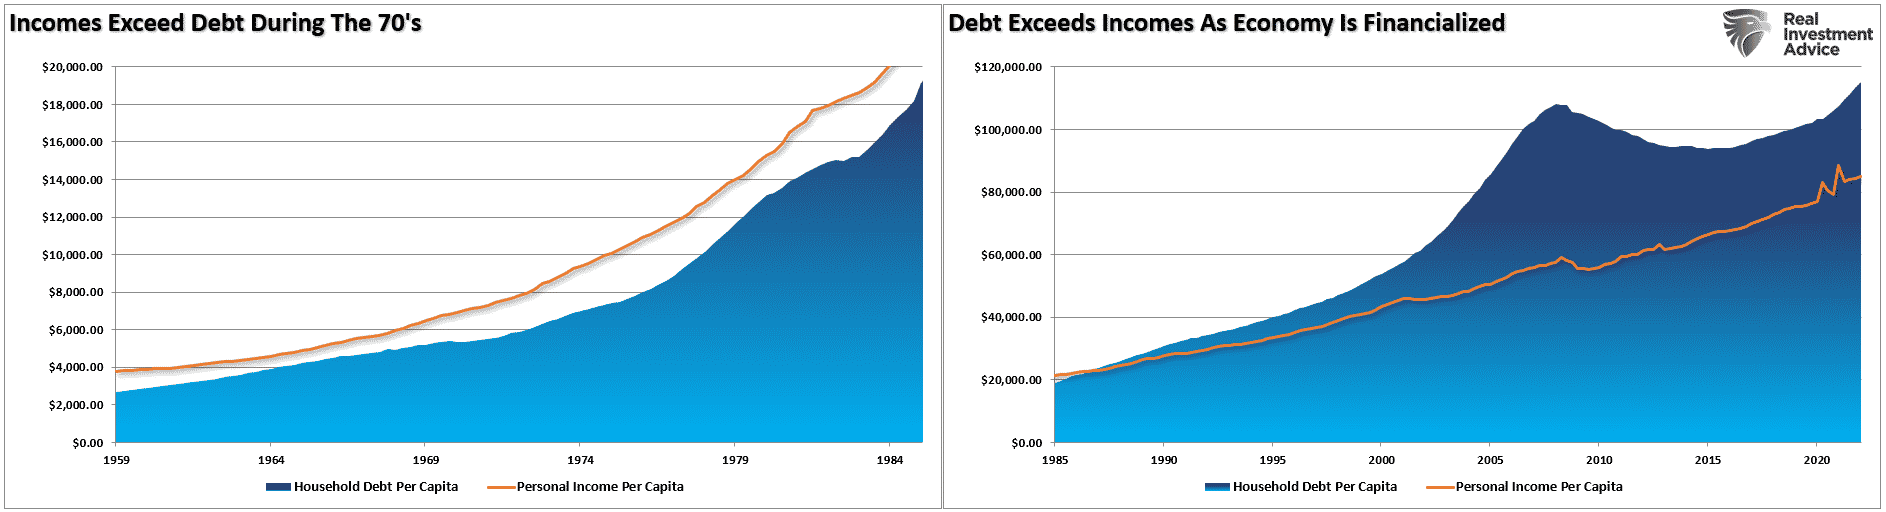 Debt vs Incomes